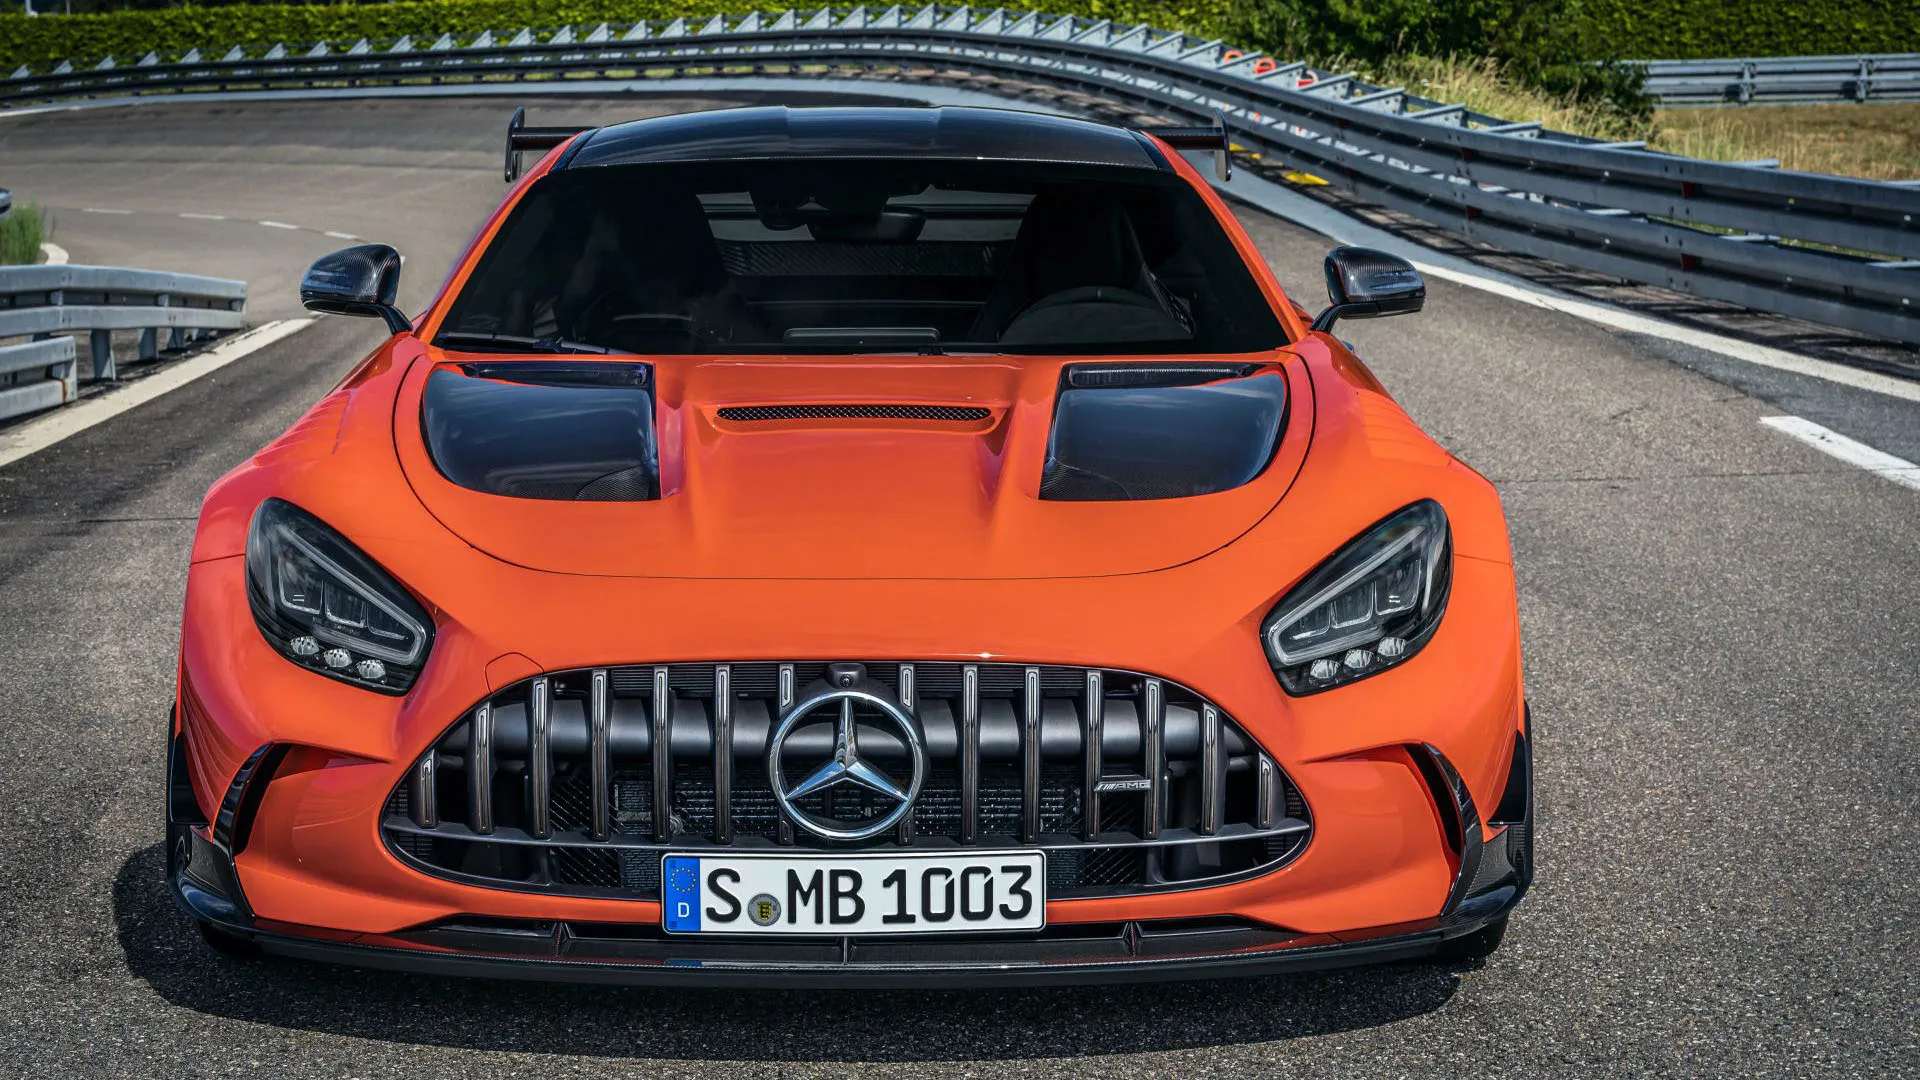 نمای جلو مرسدس amg gt سری بلک / Mercedes-AMG GT Black Series با رنگ نارنجی